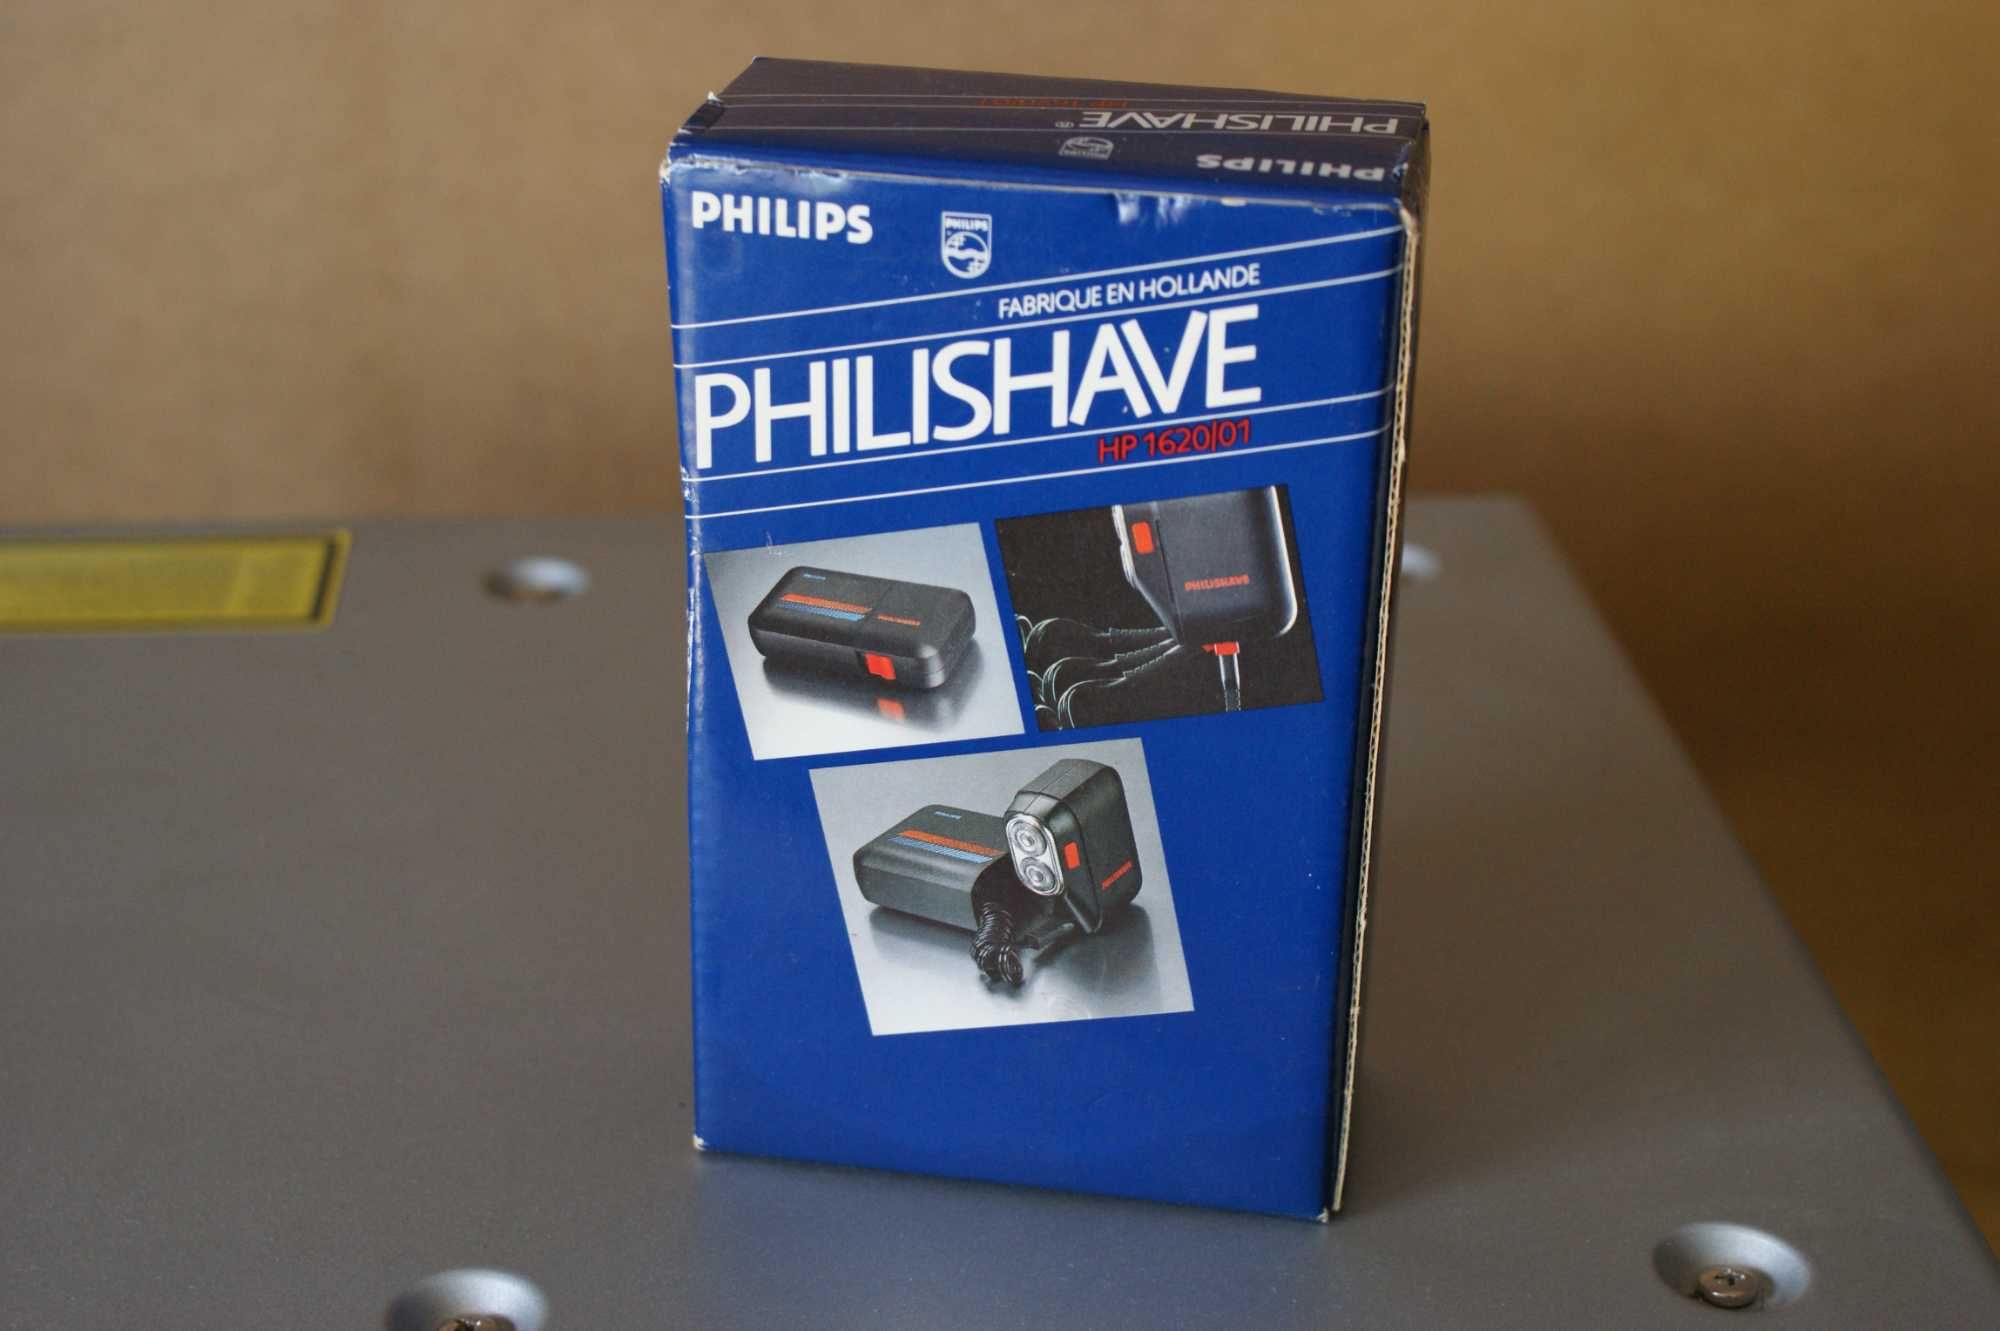 Kolekcjonerska nowa maszynka Philips Philishave HP1620/01 1985r